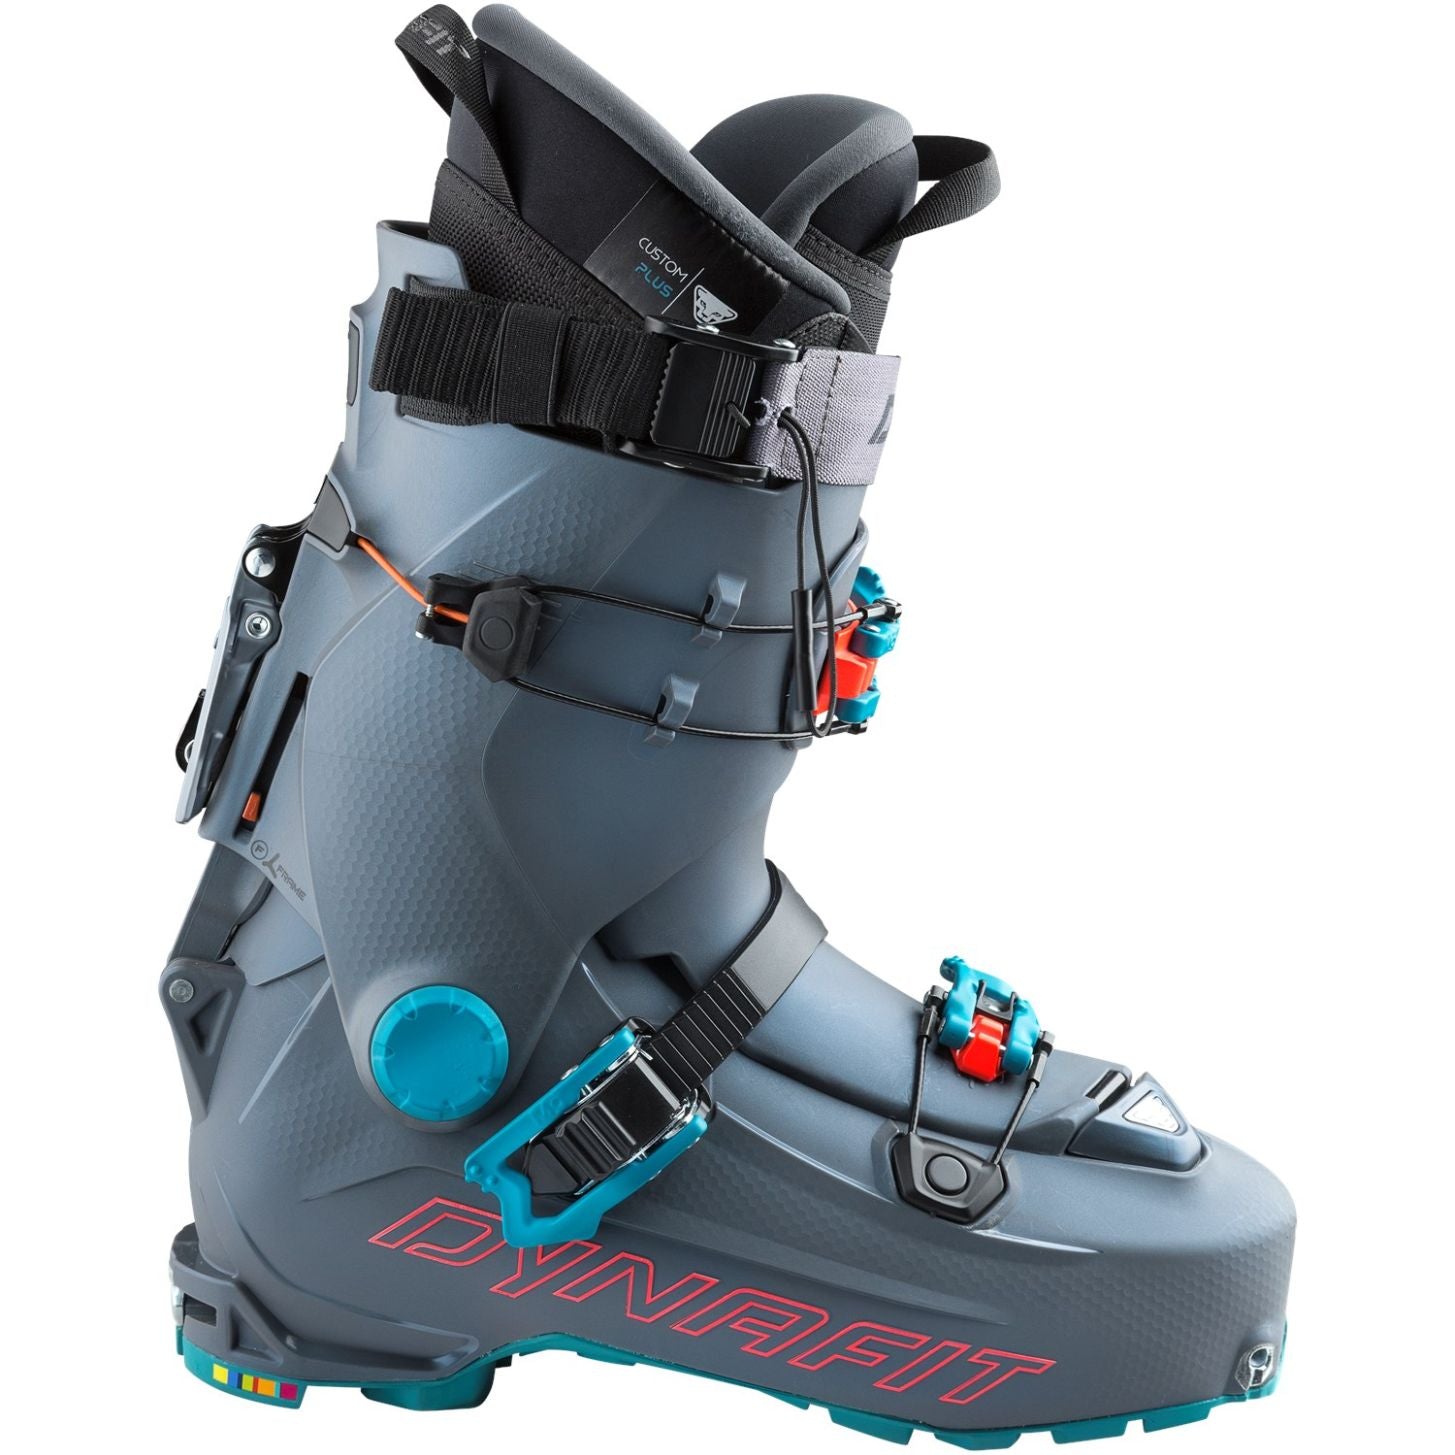 Dynafit Women's HOJI Pro Tour W Ski Touring Boots 